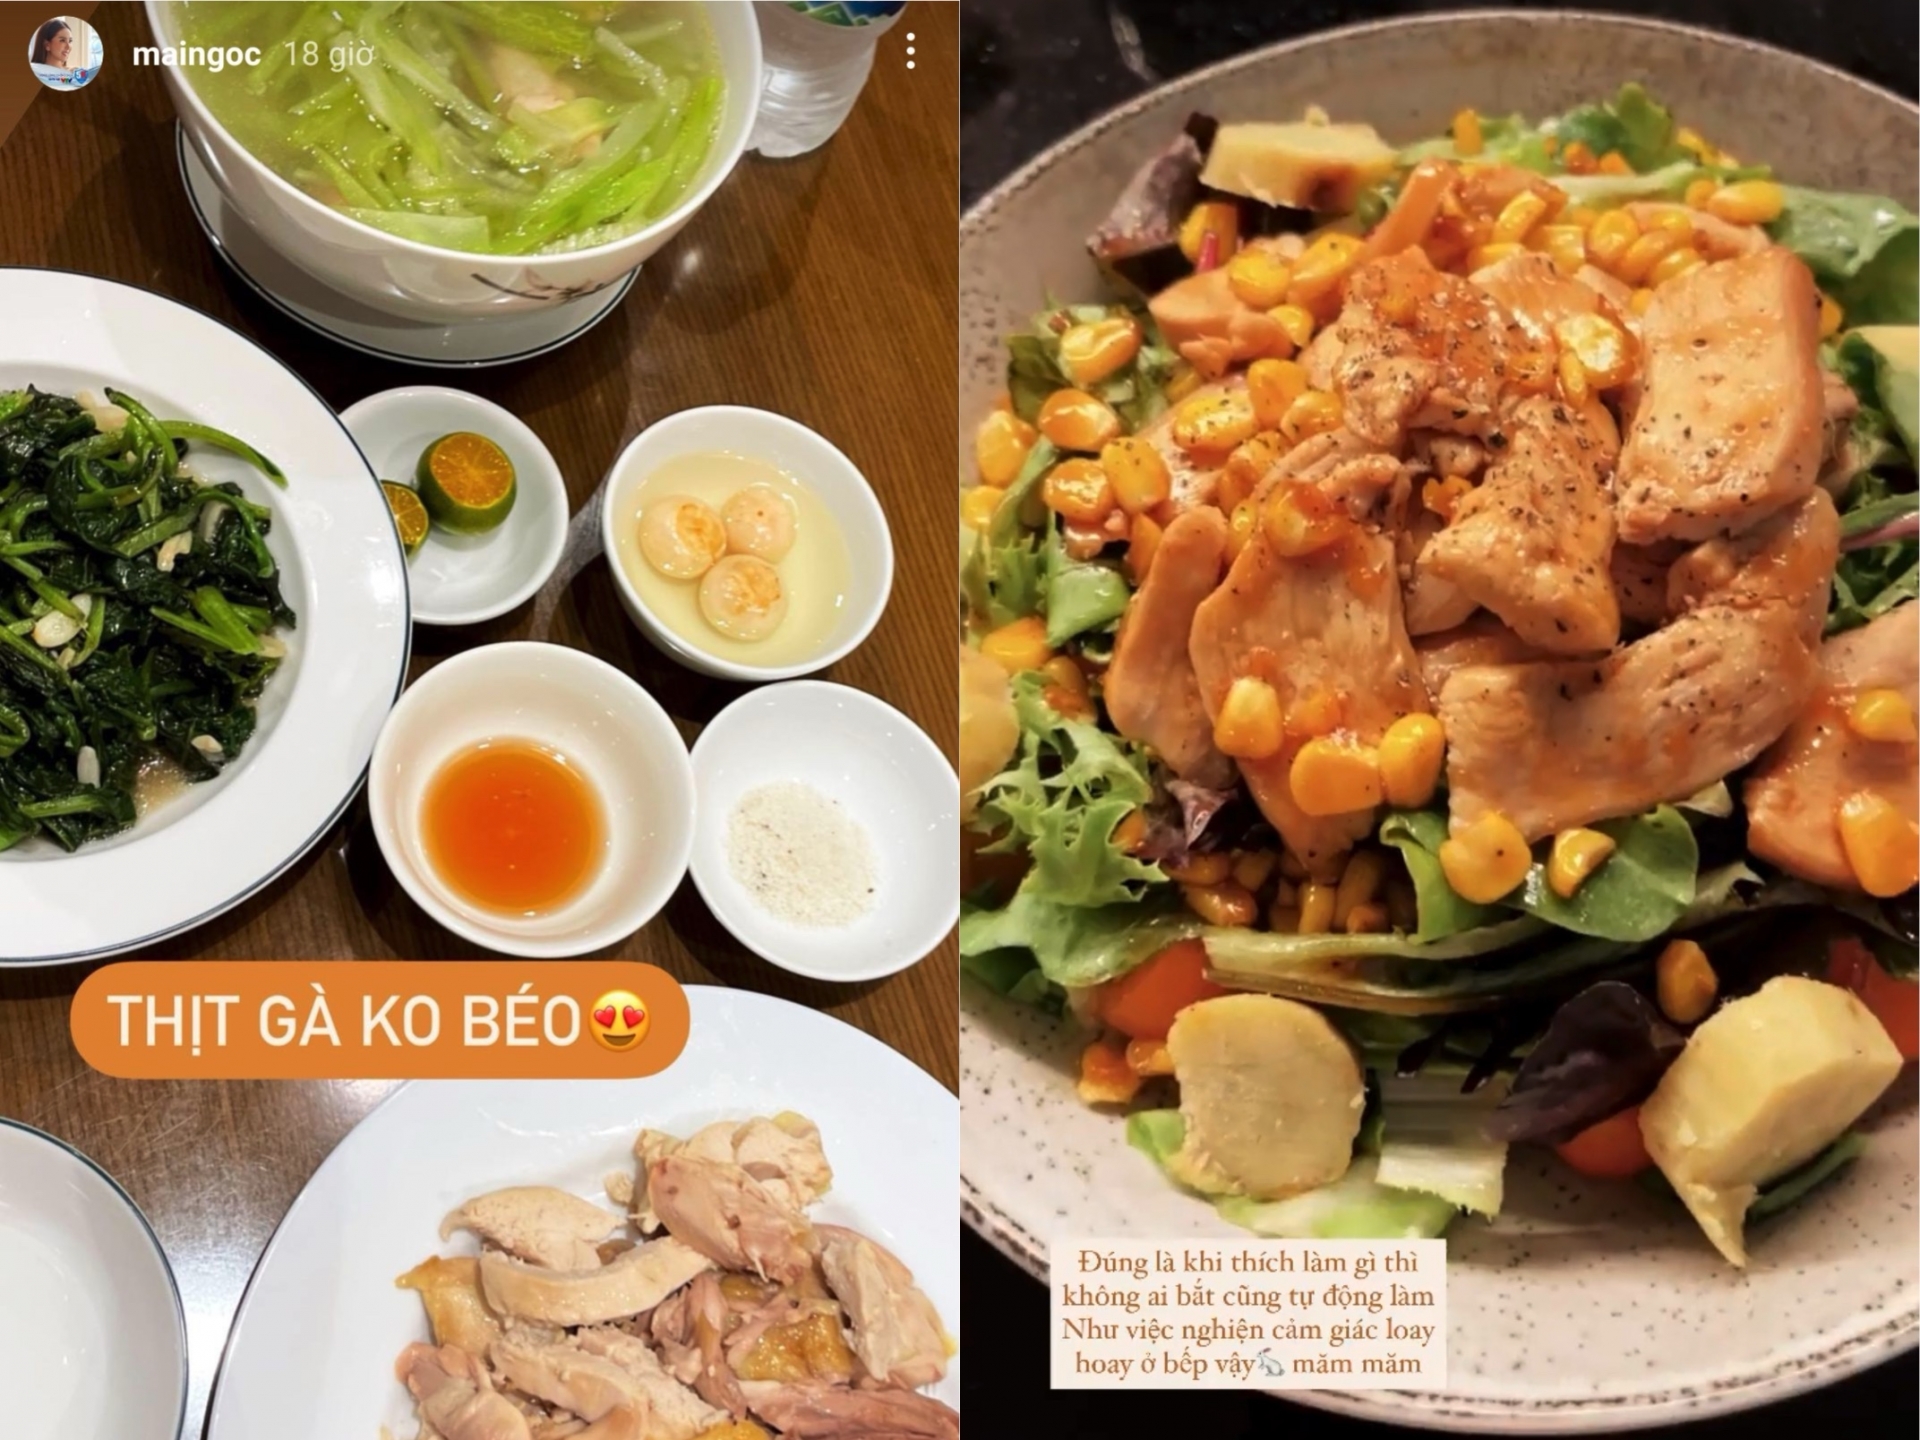 Ức gà là một loại thực phẩm quen thuộc trong thực đơn giảm cân của sao Việt với nhiều kiểu chế biến khác nhau như áp chảo, nướng...vừa ngon vừa giúp giữ dáng hiệu quả